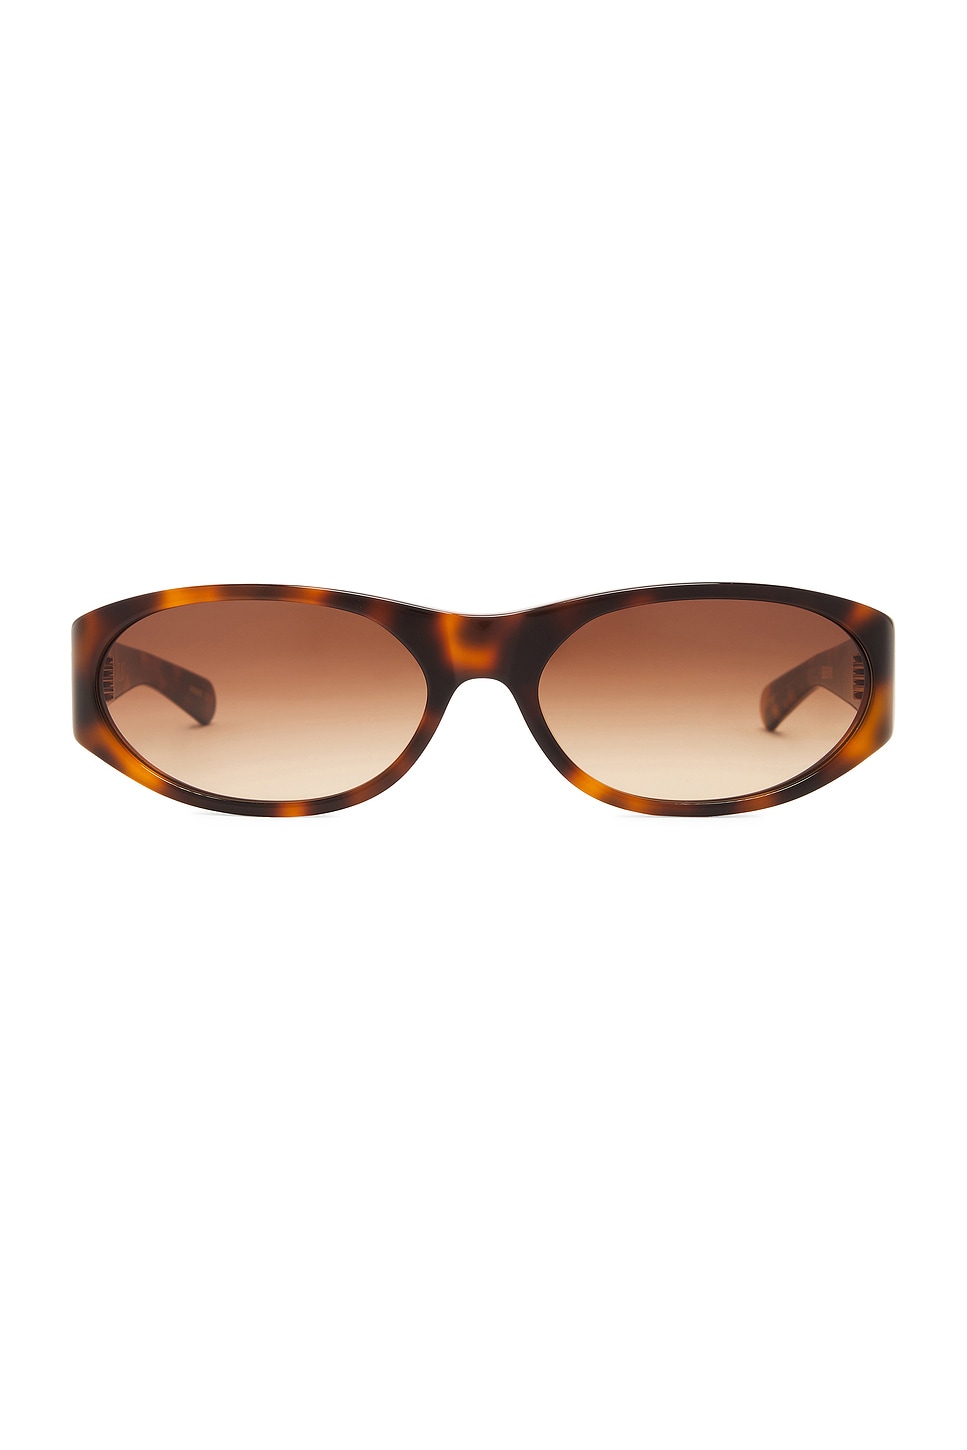 Eddie Kyu Sunglasses in Brown